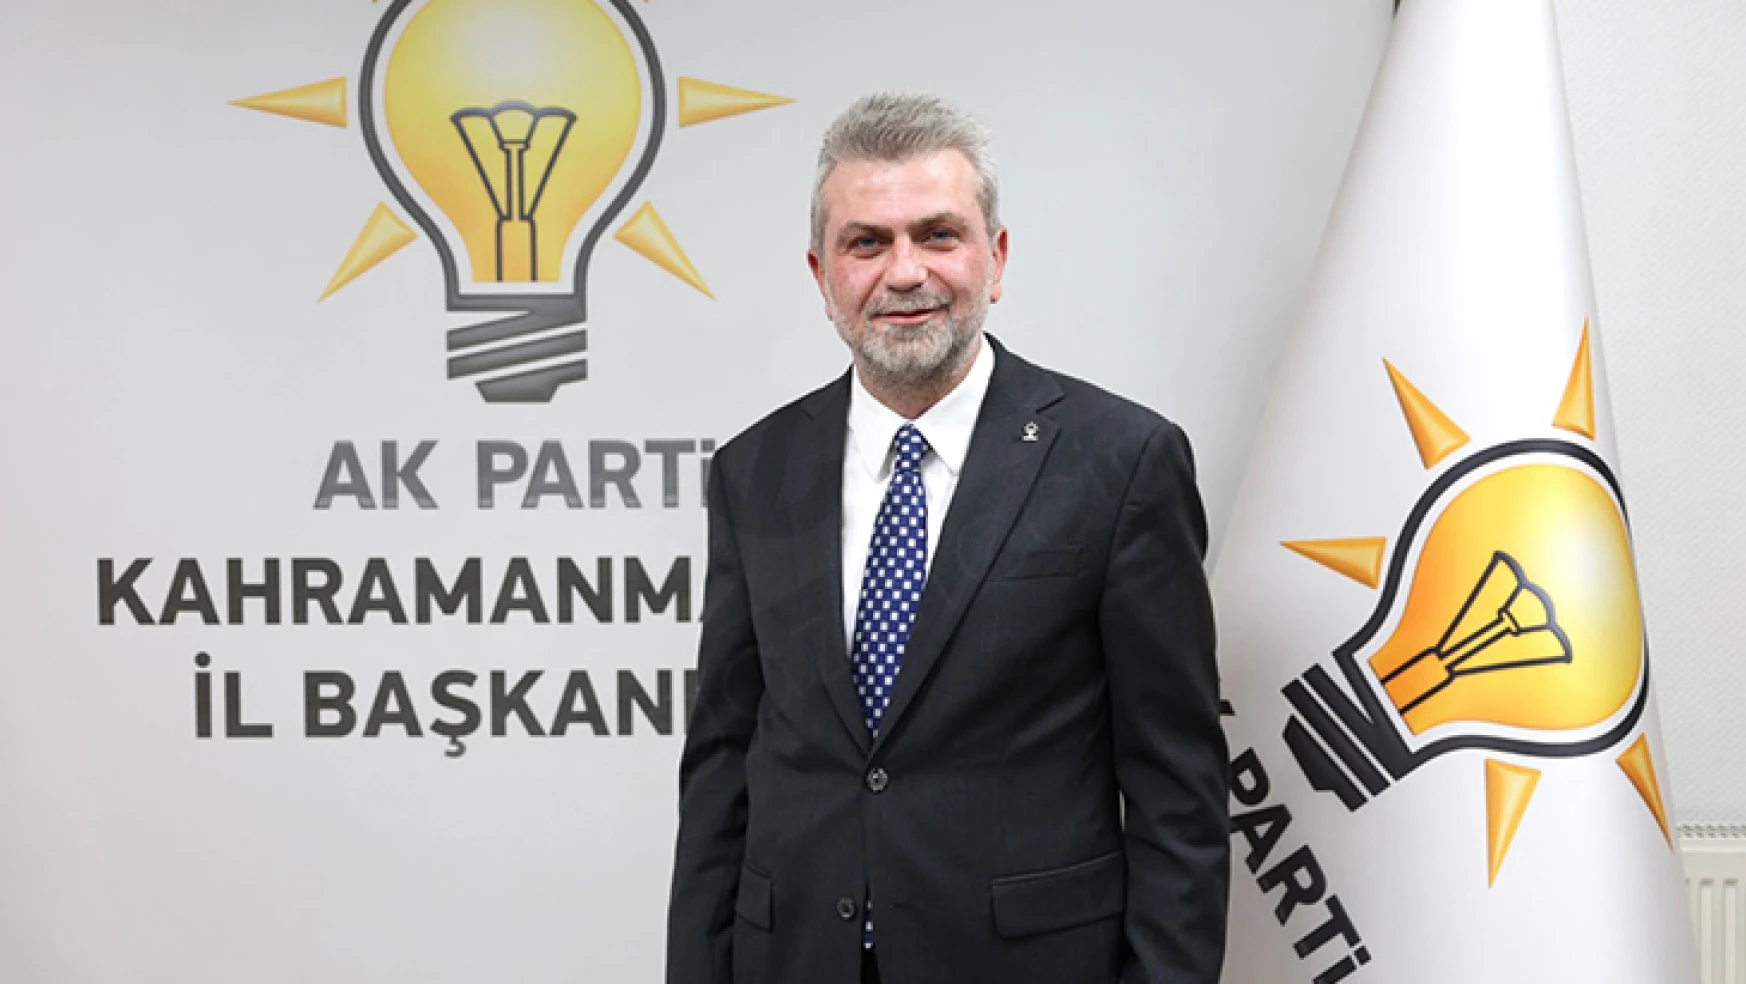 AK Parti İl Başkanı Görgel, muhalefeti sert bir dille eleştirdi